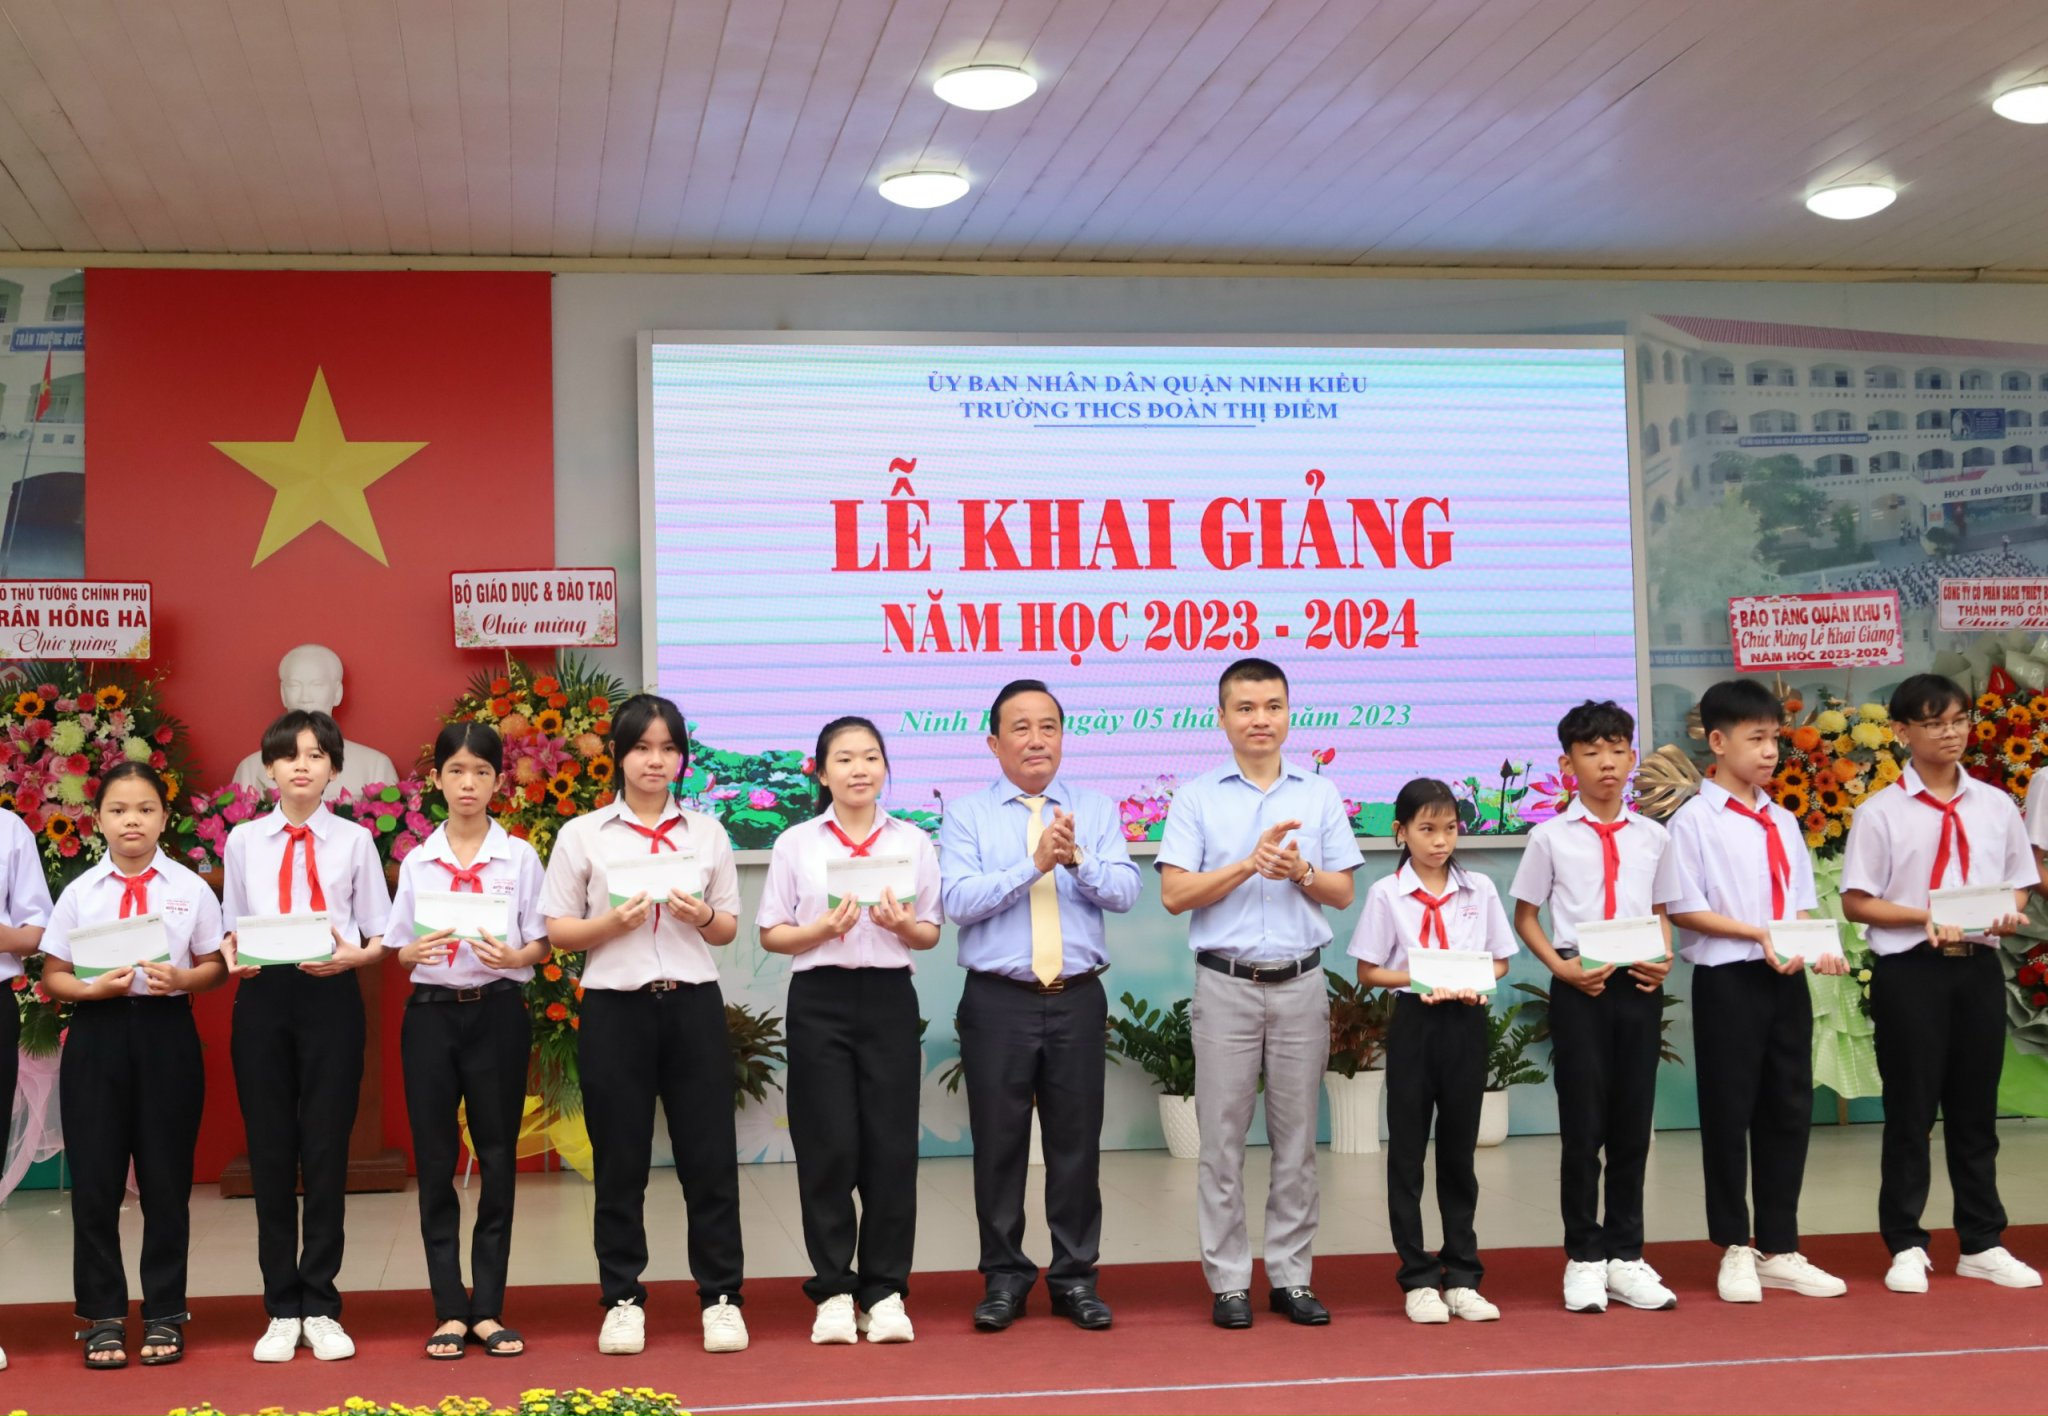 Nhà báo Phạm Tuấn Anh - Tổng biên tập Báo Dân trí và ông Nguyễn Tiền Phong – UV BTV Thành ủy, Bí thư Quận ủy Ninh Kiều trao tặng quà cho các em học sinh.